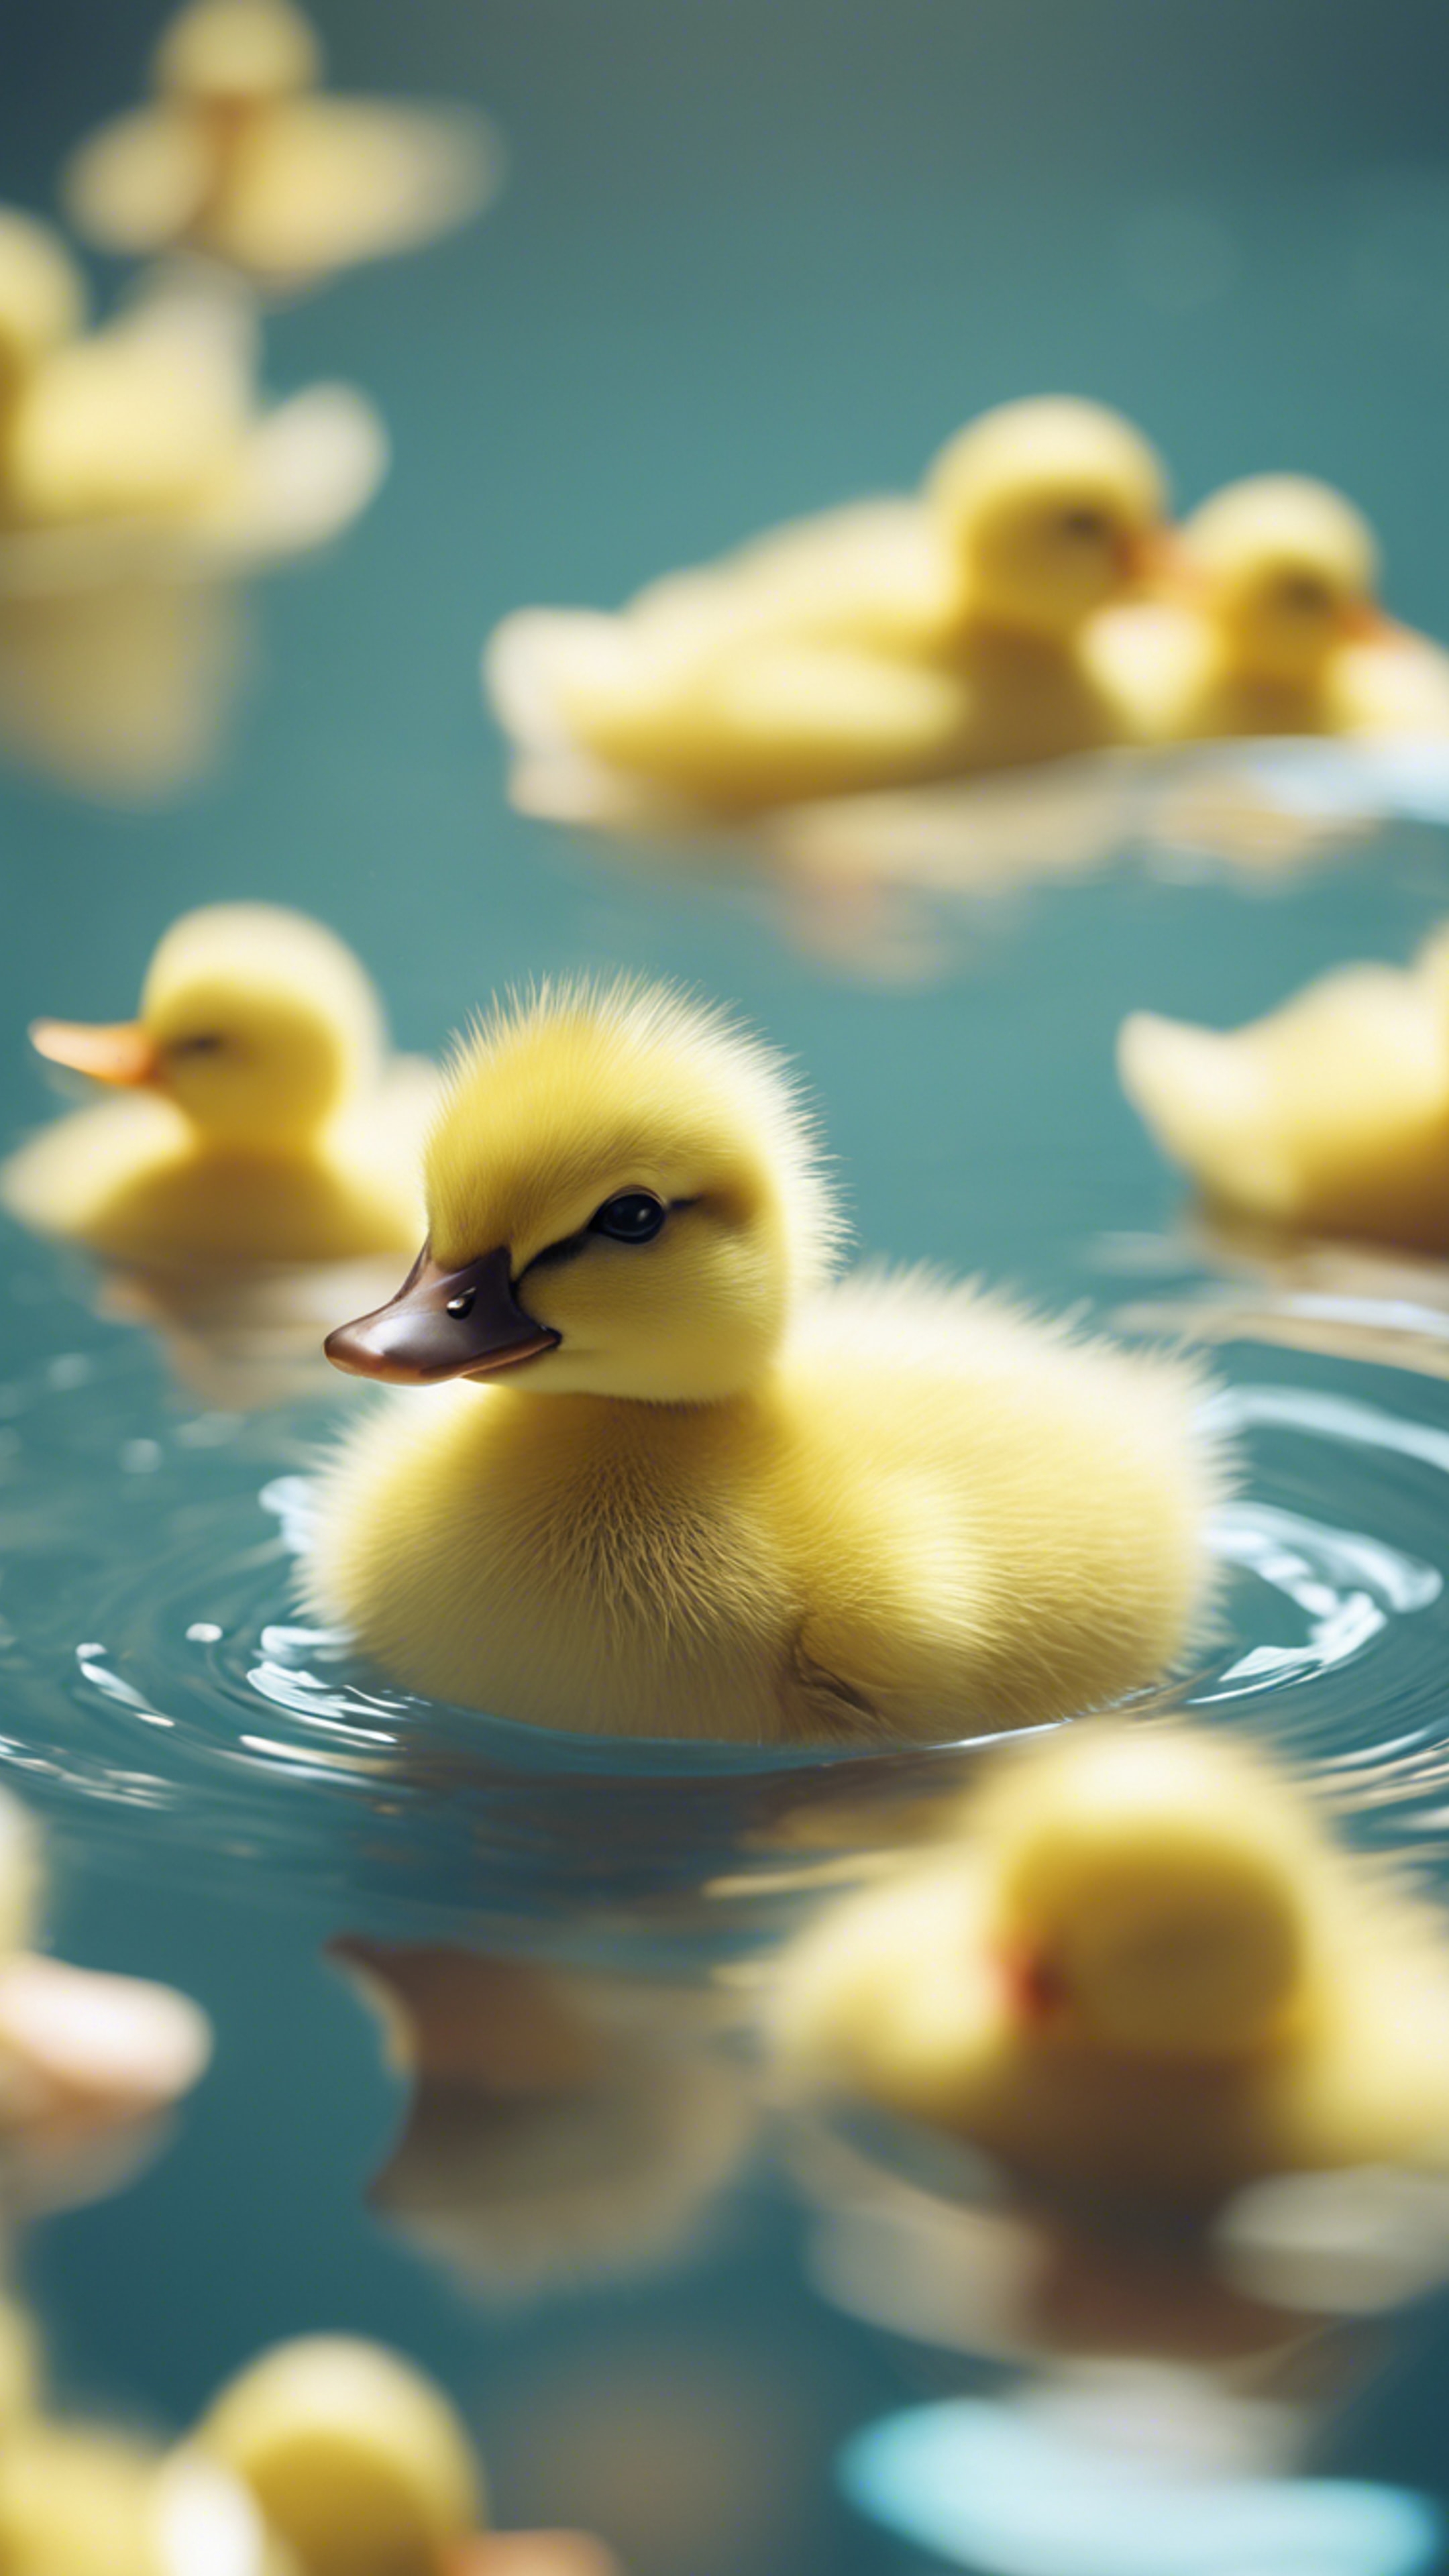 A small, chubby, kawaii yellow duckling swimming in a pastel blue pond. Hình nền[2b07b187d2cc4e759cc9]